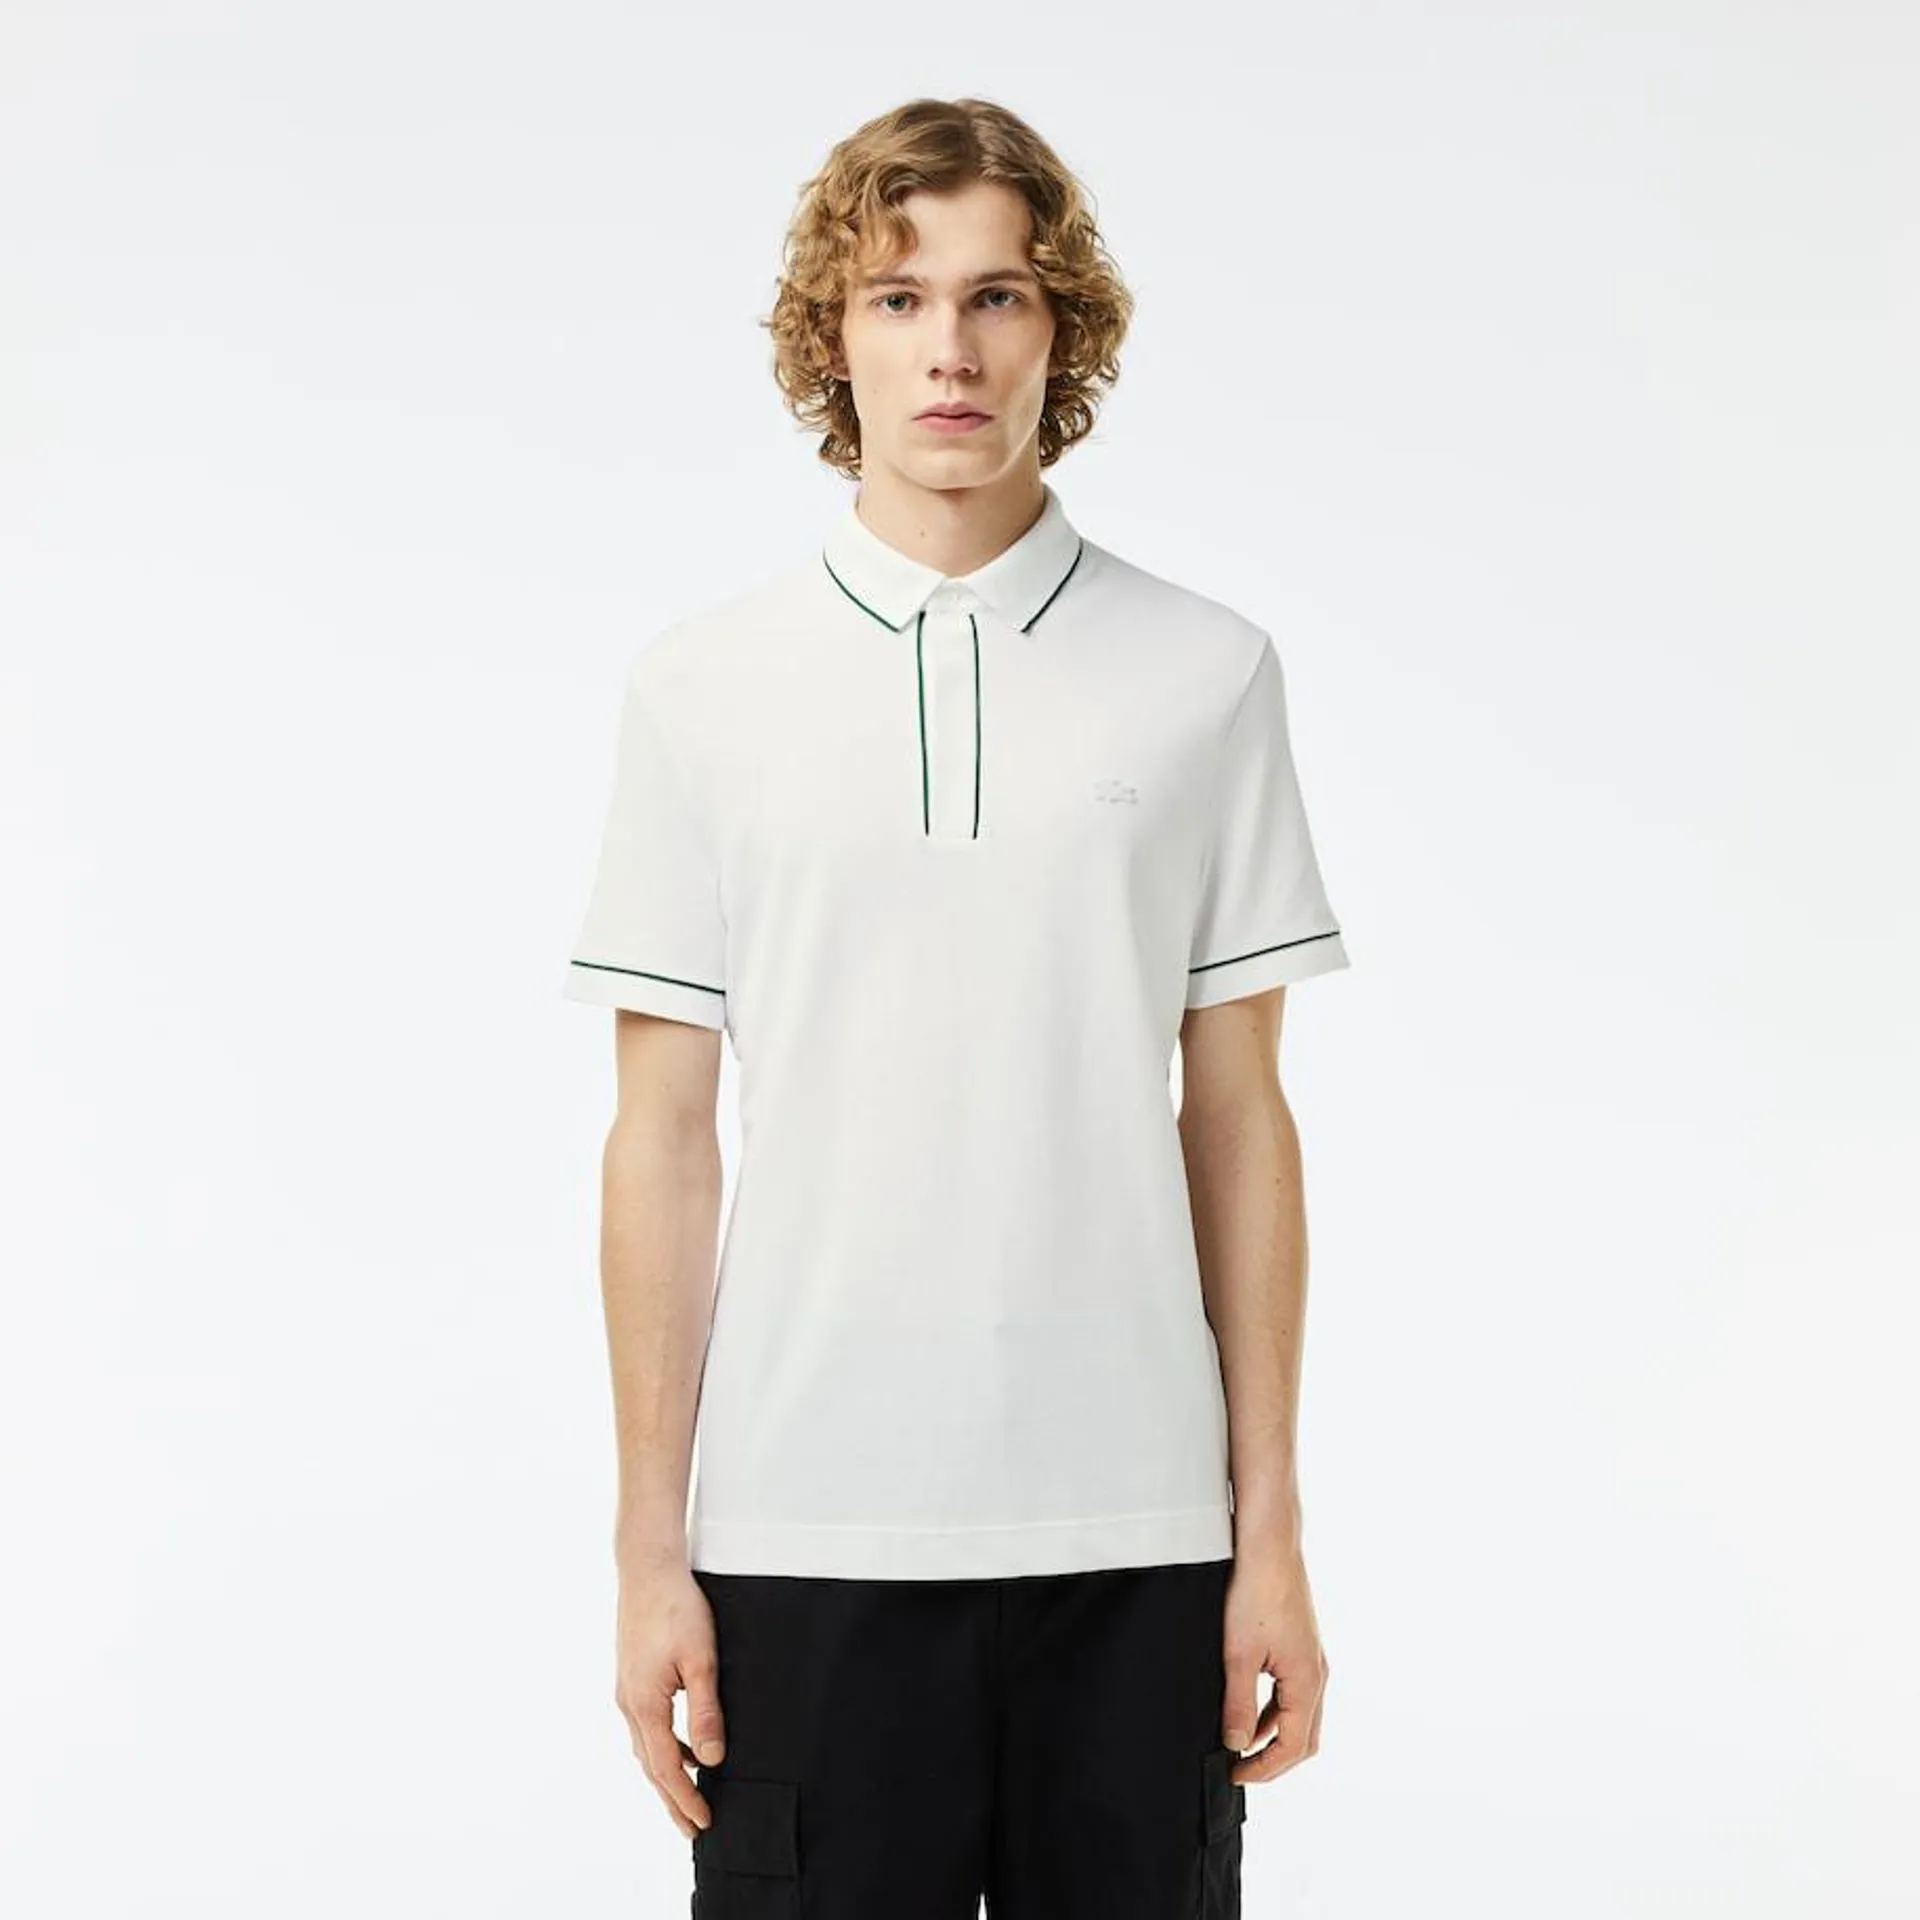 Smart Paris Stretch Cotton Contrast Trim Polo Shirt